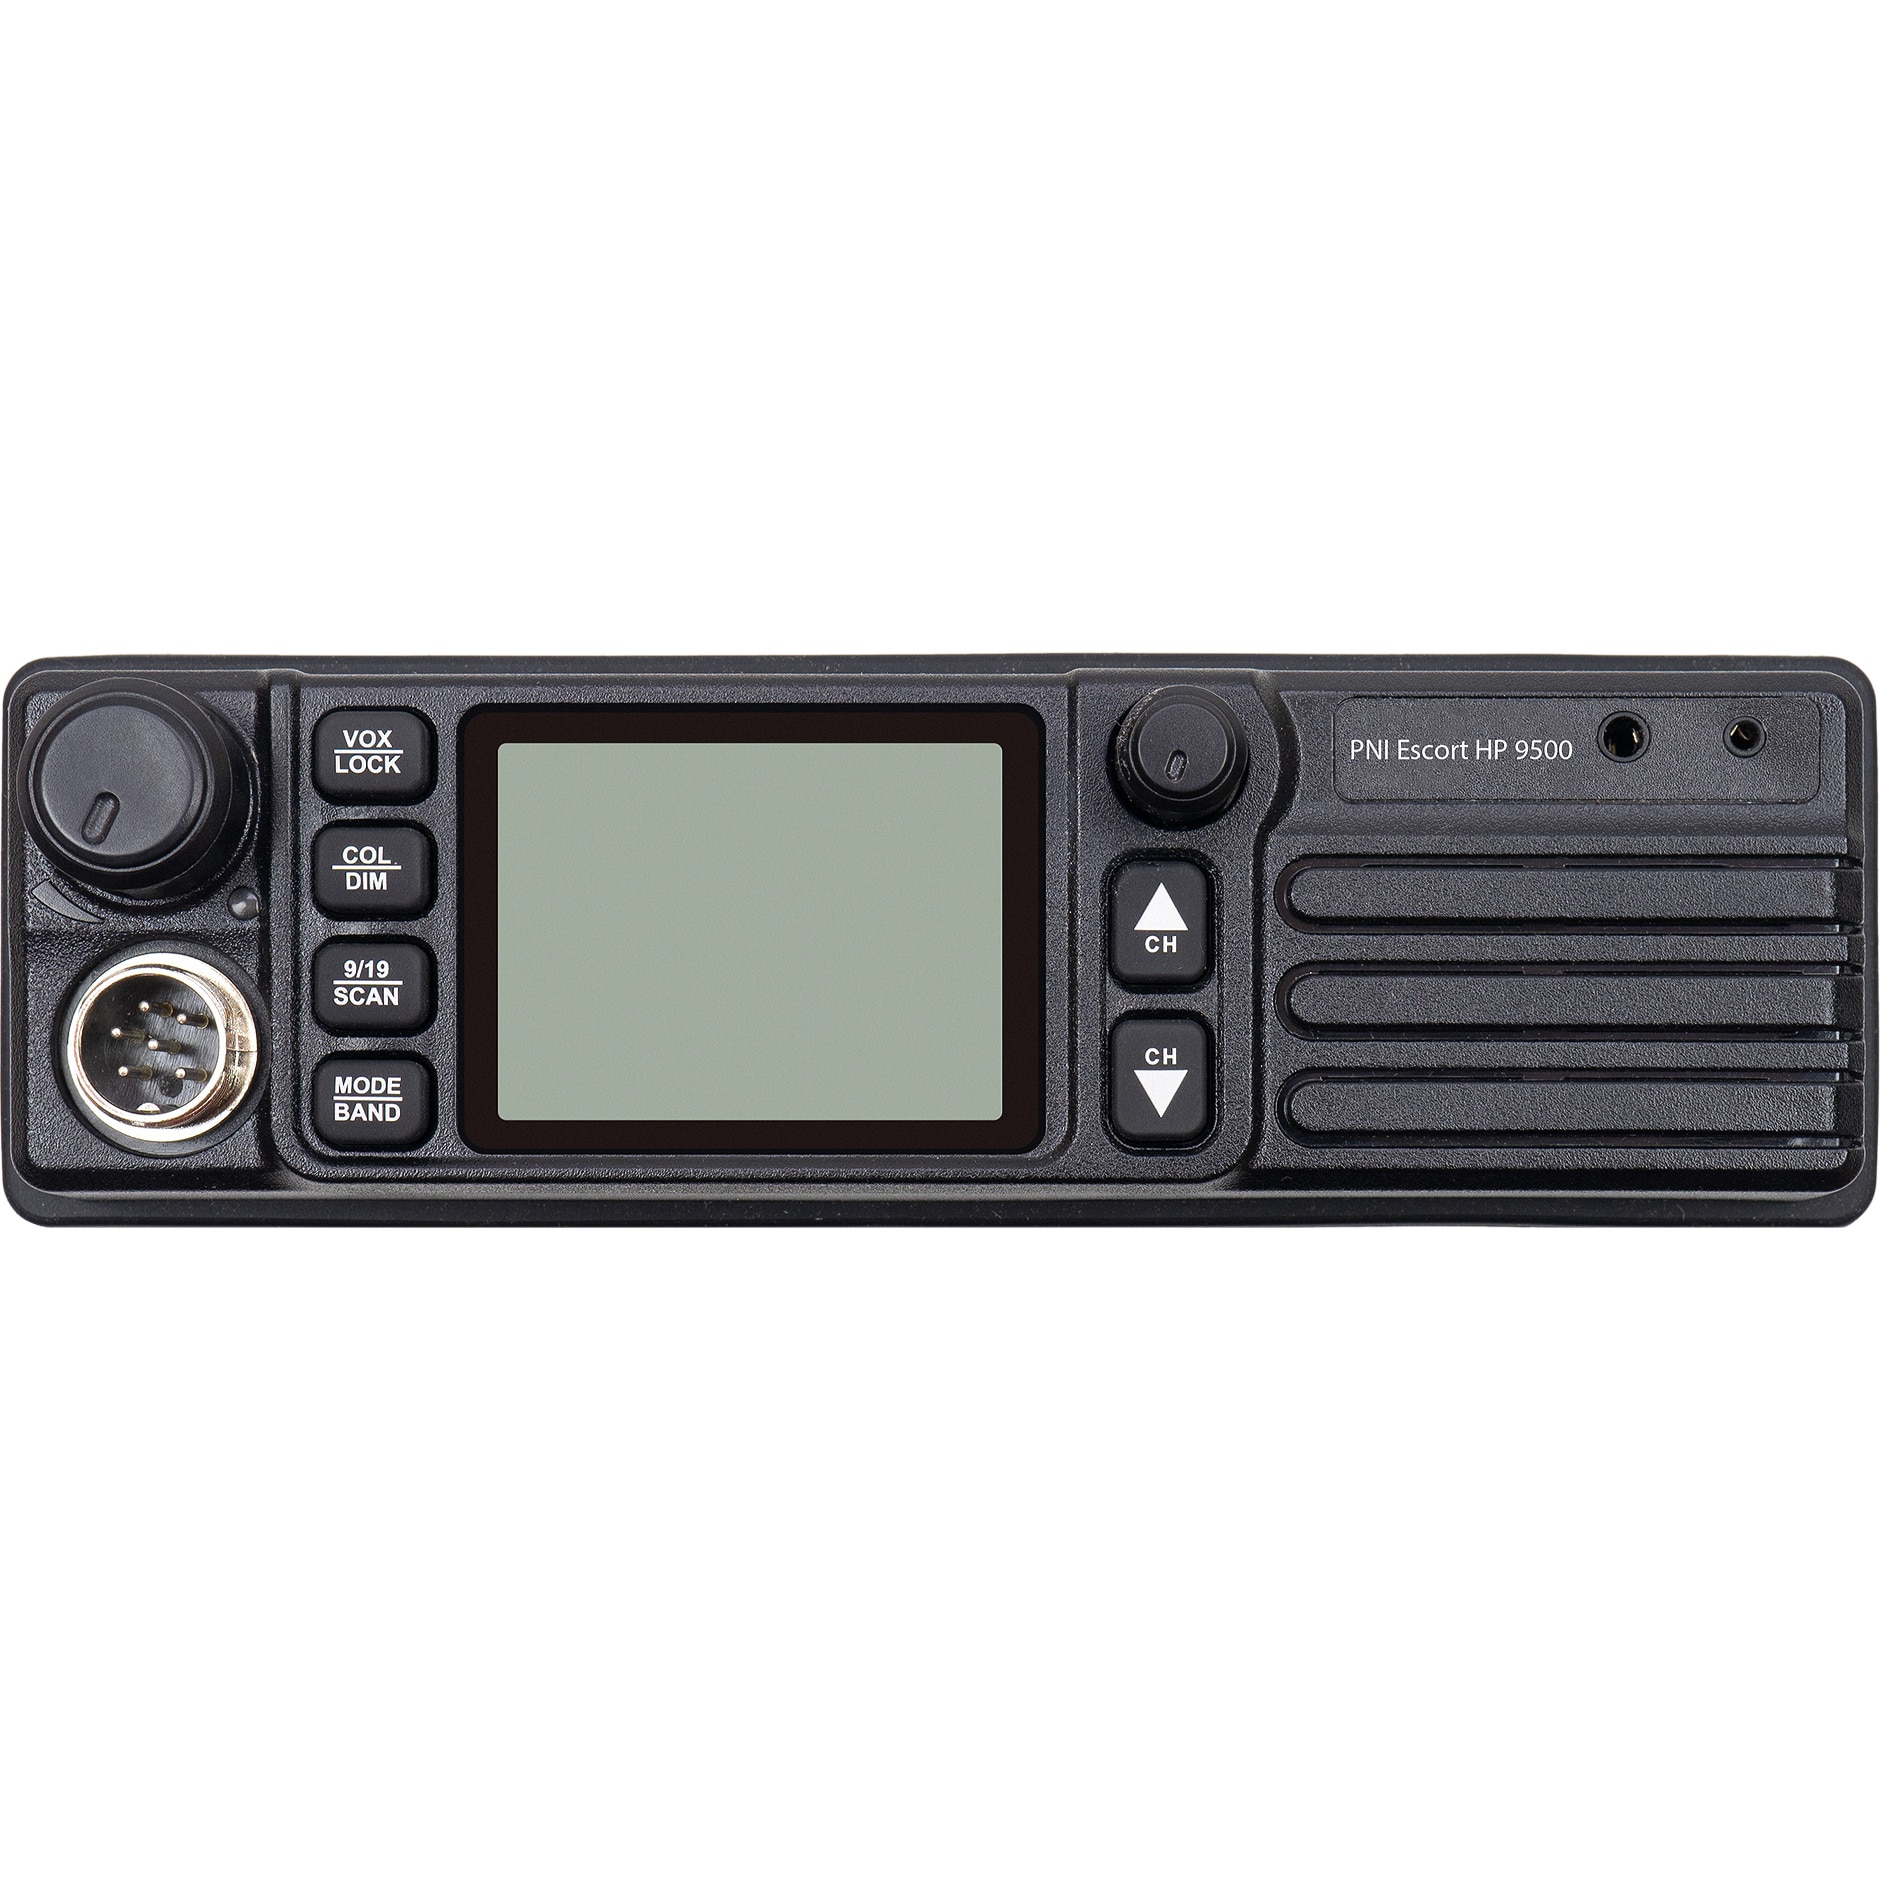 PNI Escort HP 9500 CB multistandard rádióállomás, ASQ, VOX, Scan, 4W, AM-FM,  12V 24V tápegység, szivargyújtó csatlakozóval